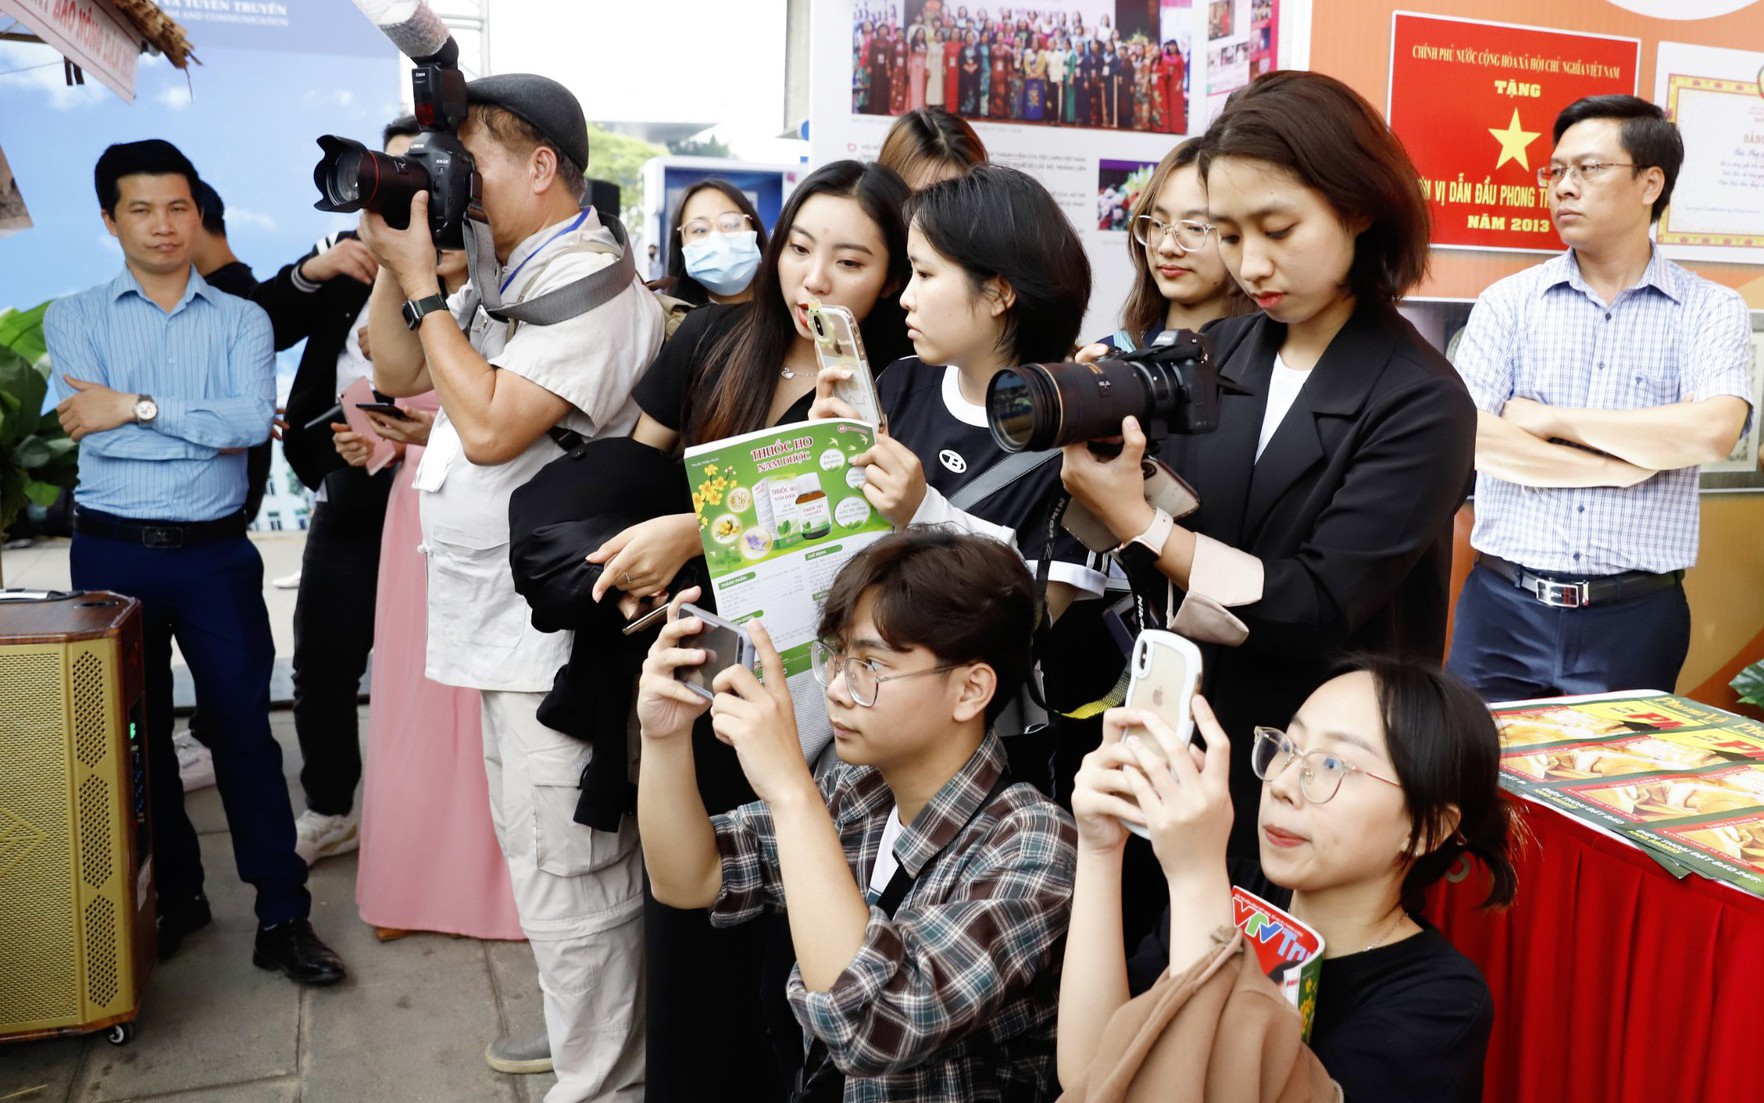 Giới trẻ hào hứng học nghề qua Talkshow “Báo chí kiến tạo” do báo NTNN/Dân Việt tổ chức